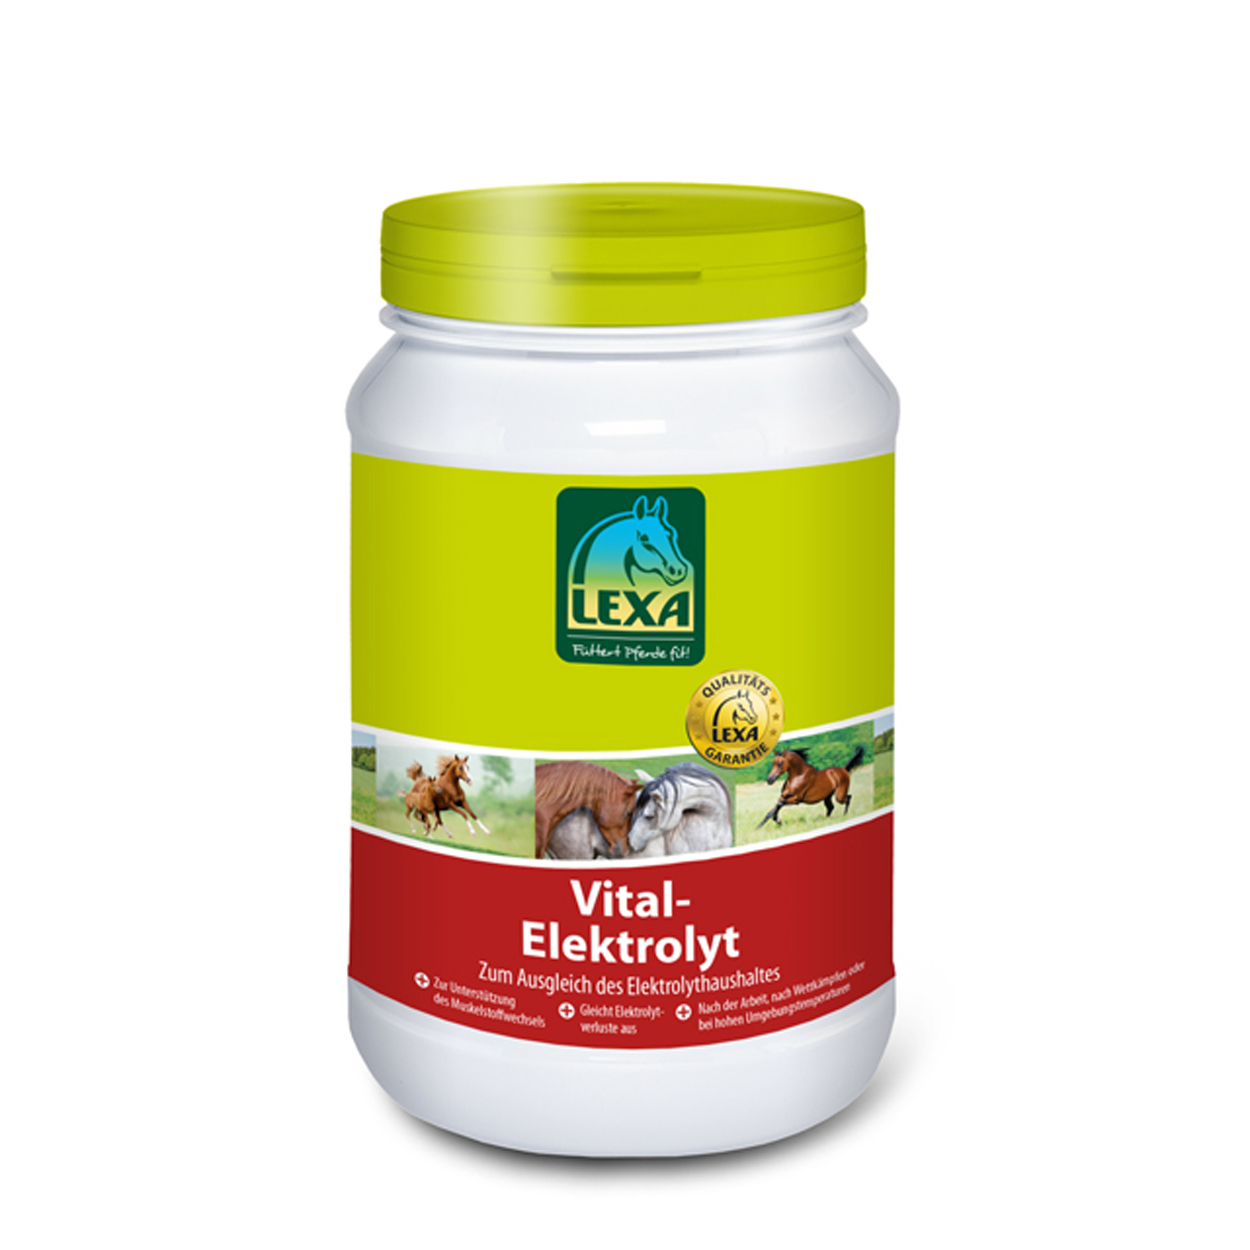 Lexa Vital Elektrolyt zur Regeneration nach Anstrengung, Elektrolyte